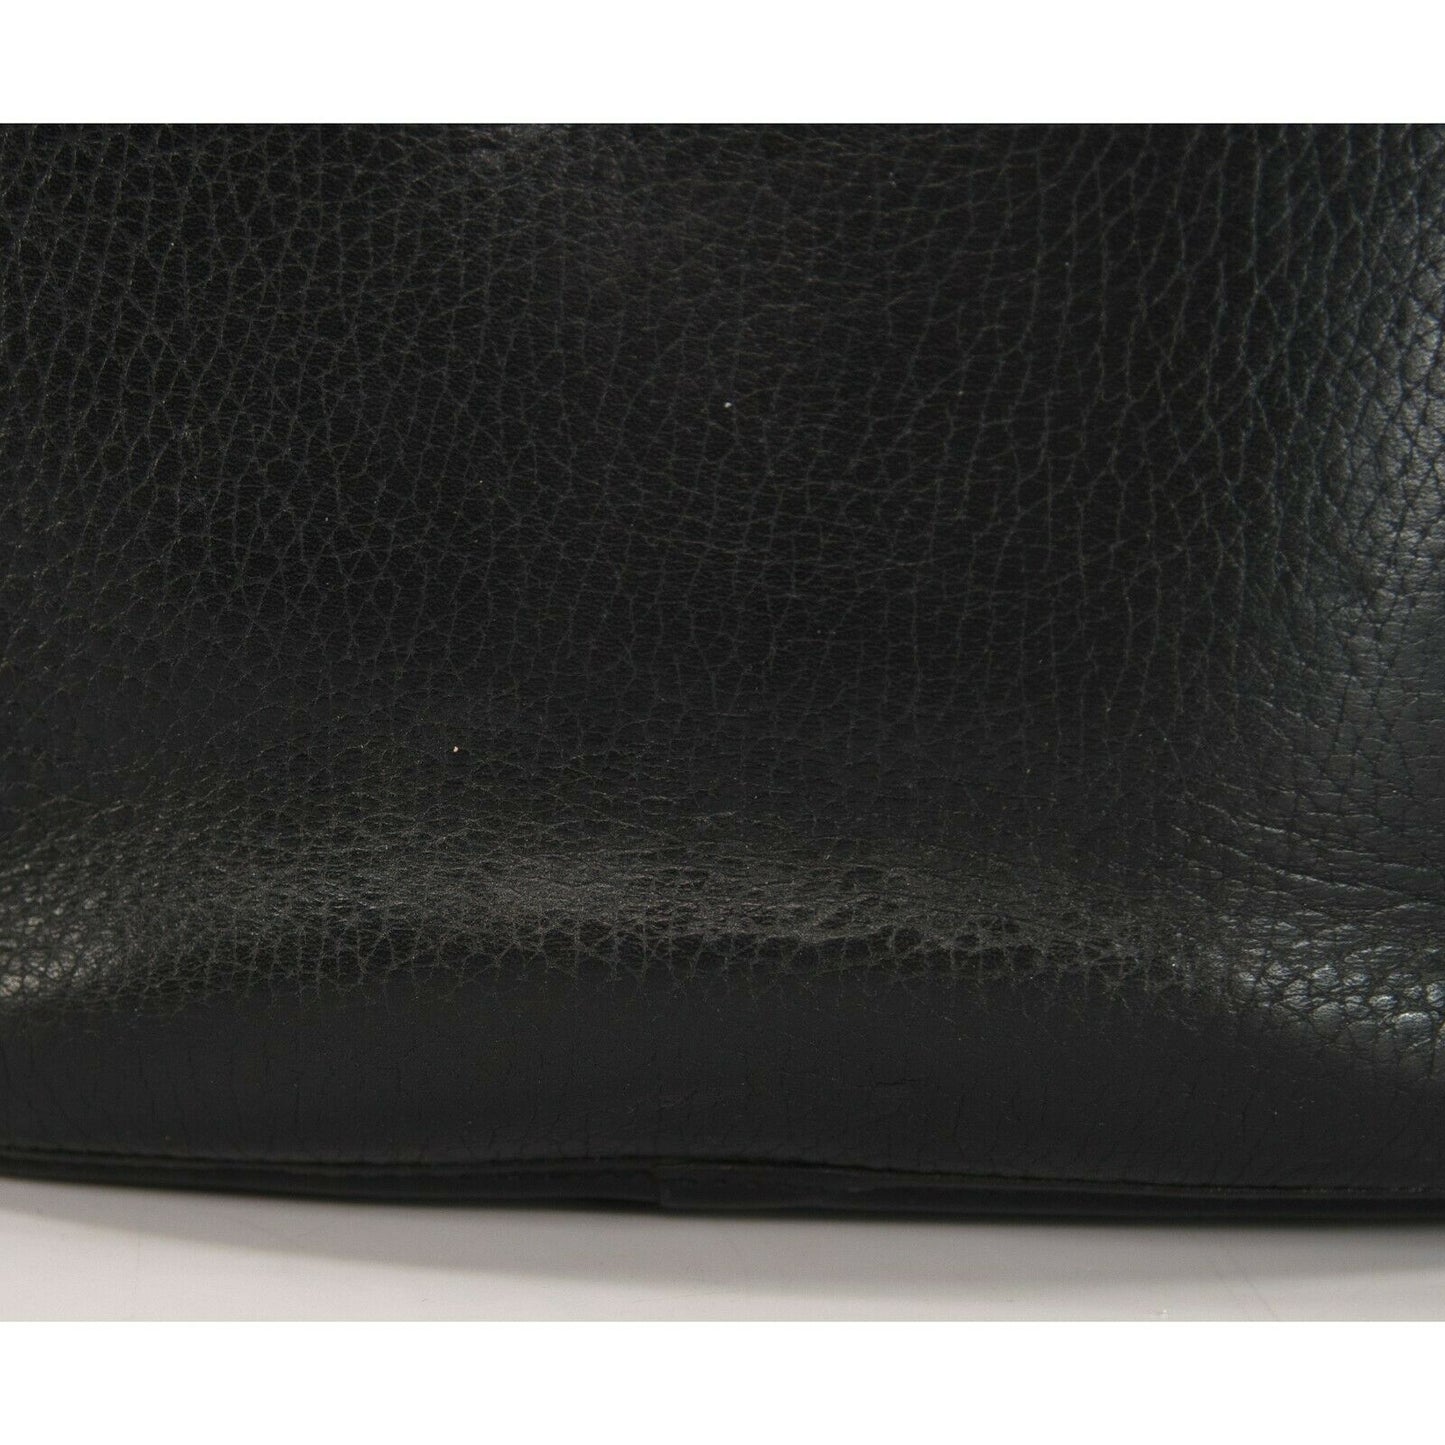 Brighton Black Croco Leather Crossbody Bucket Bag NWT